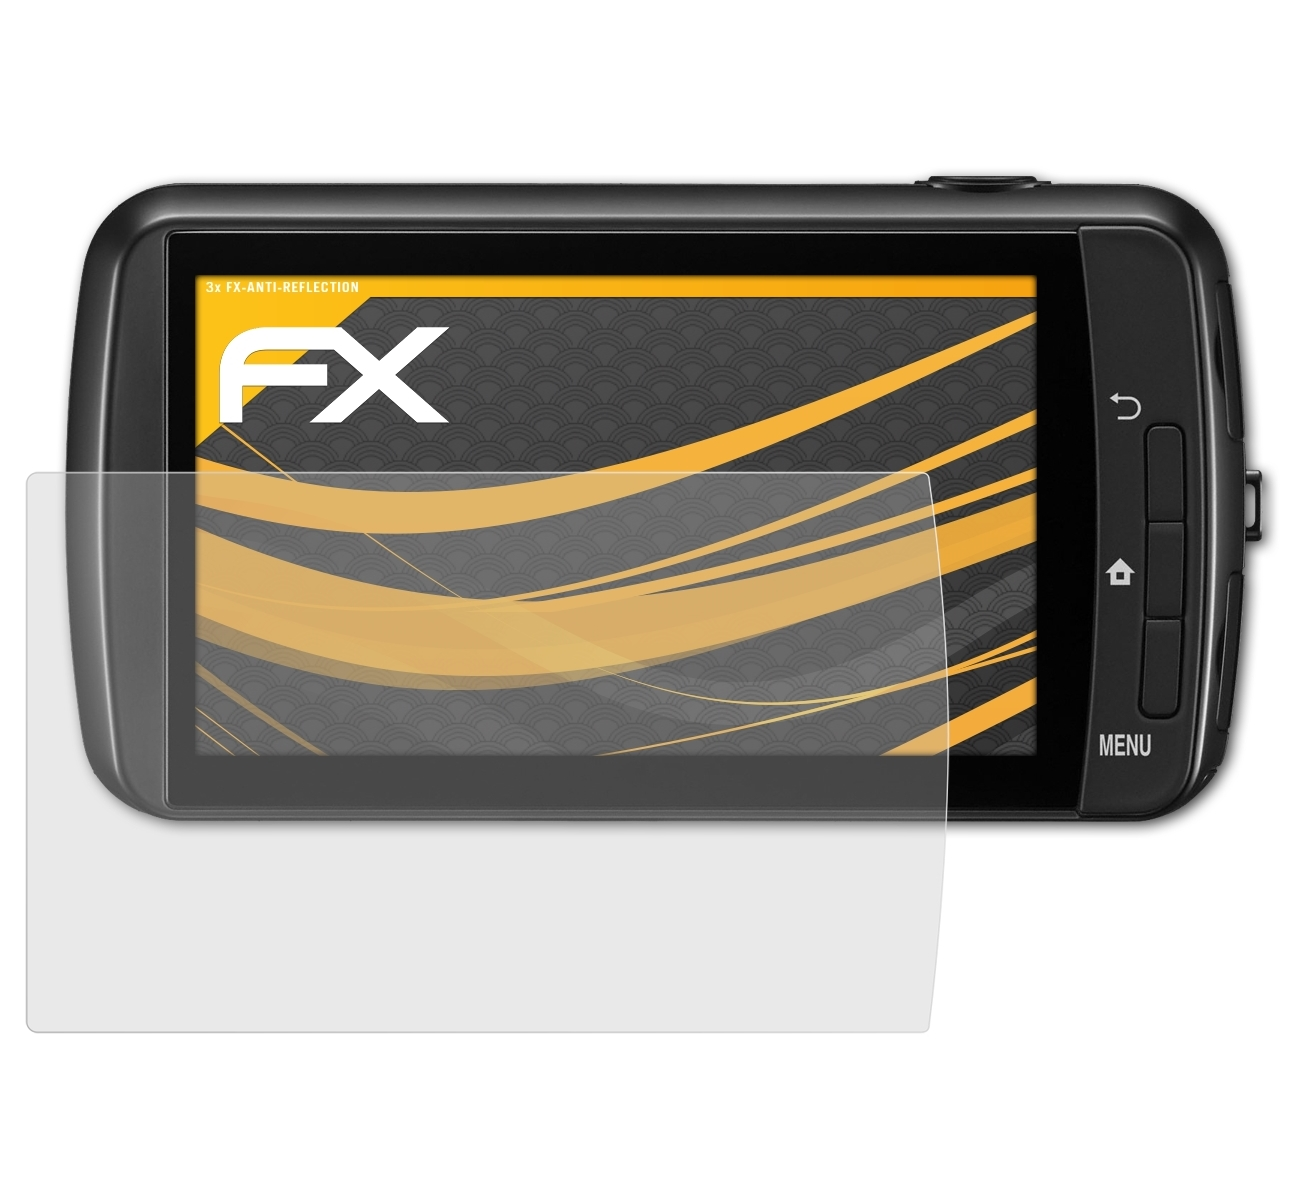 Displayschutz(für S800c) FX-Antireflex Coolpix Nikon 3x ATFOLIX